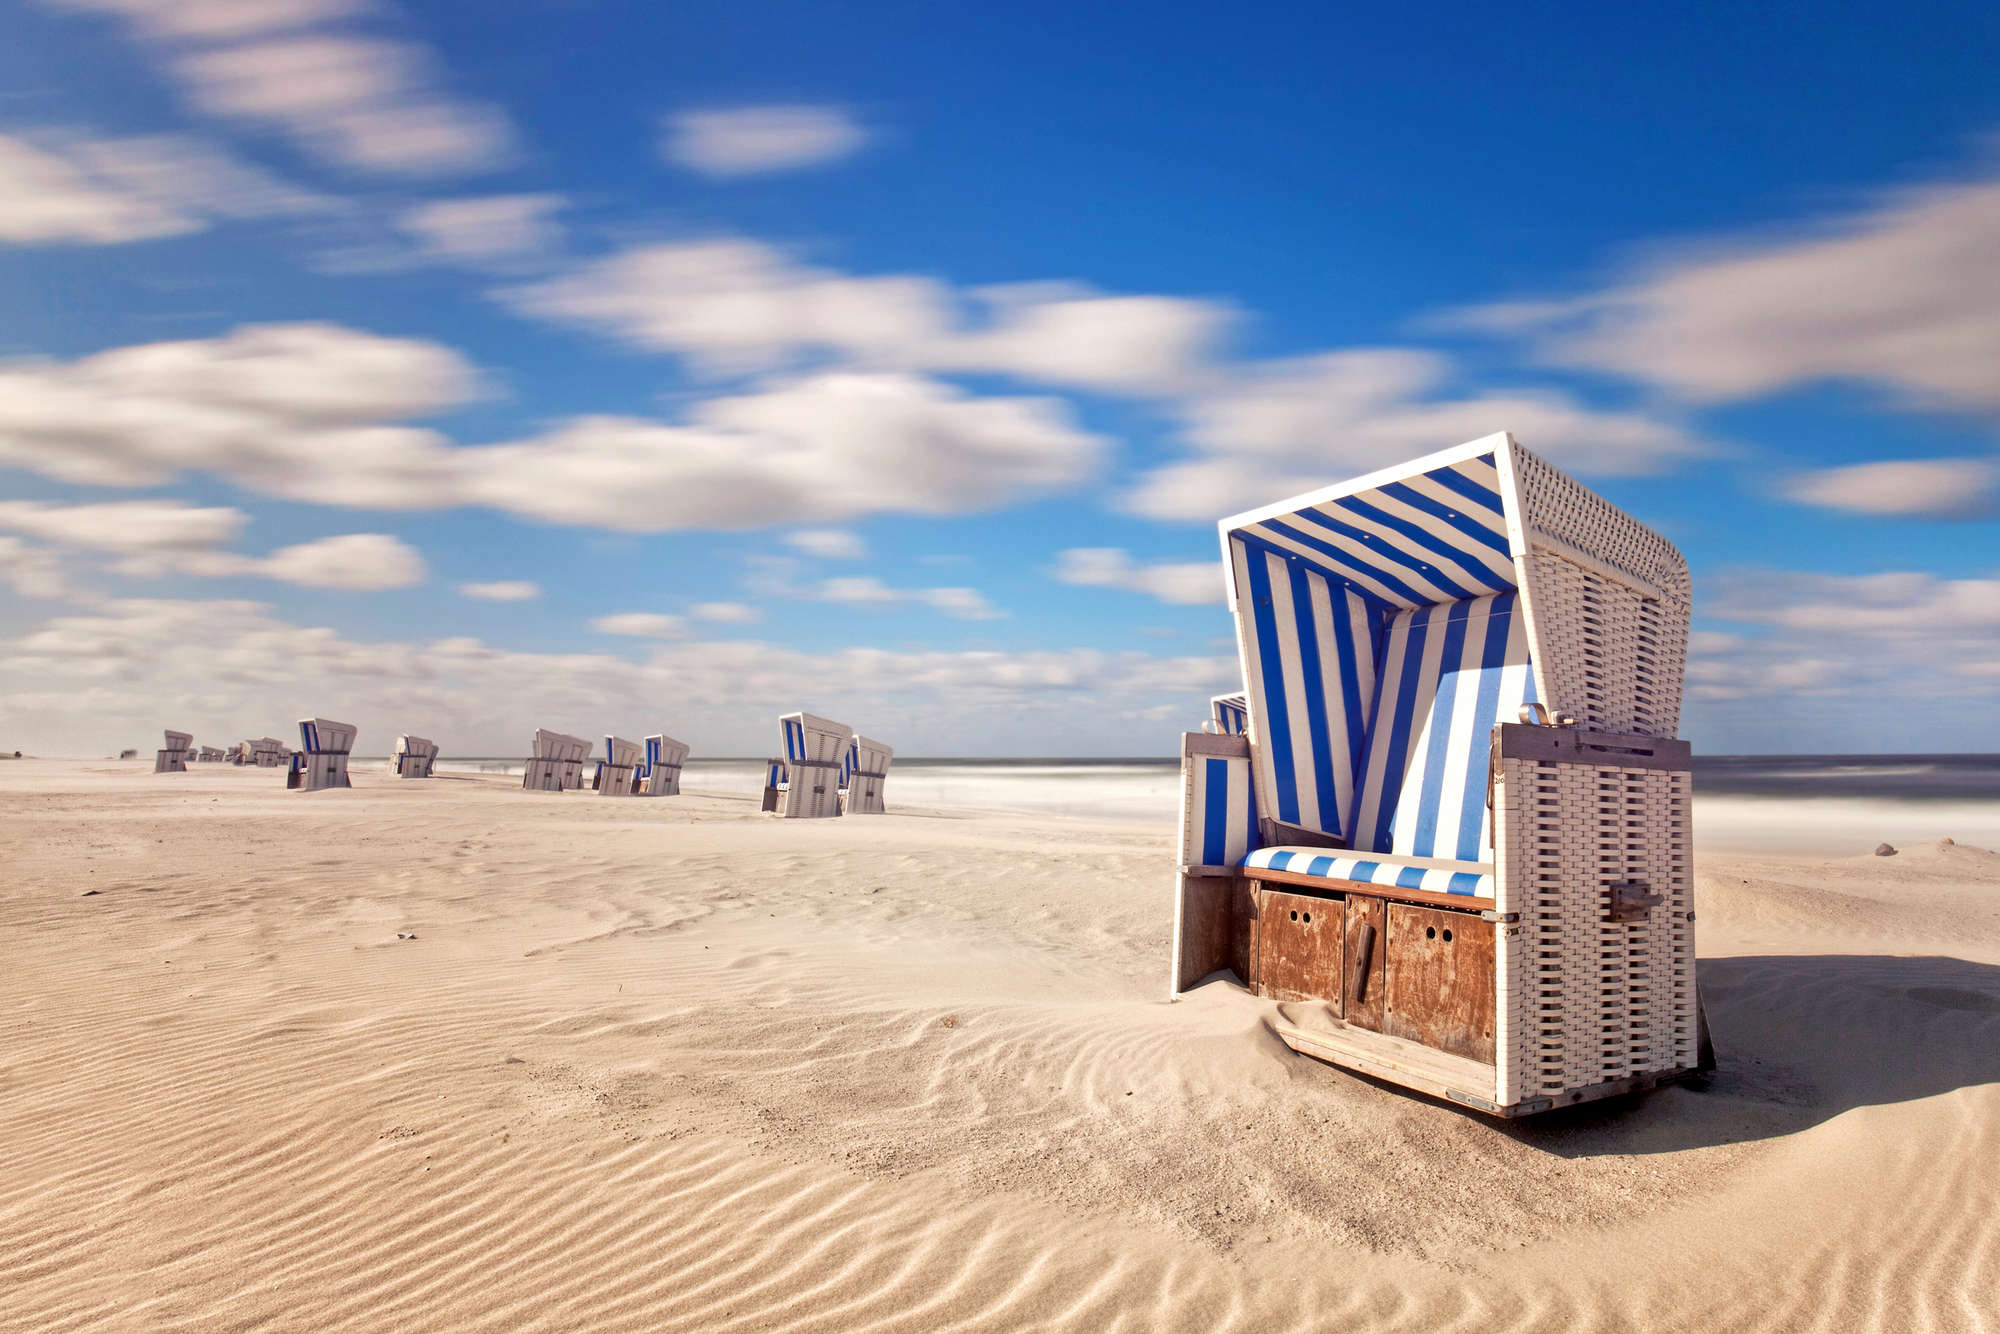             Strand muurschildering strandstoelen in het zand op parelmoer glad vlies
        